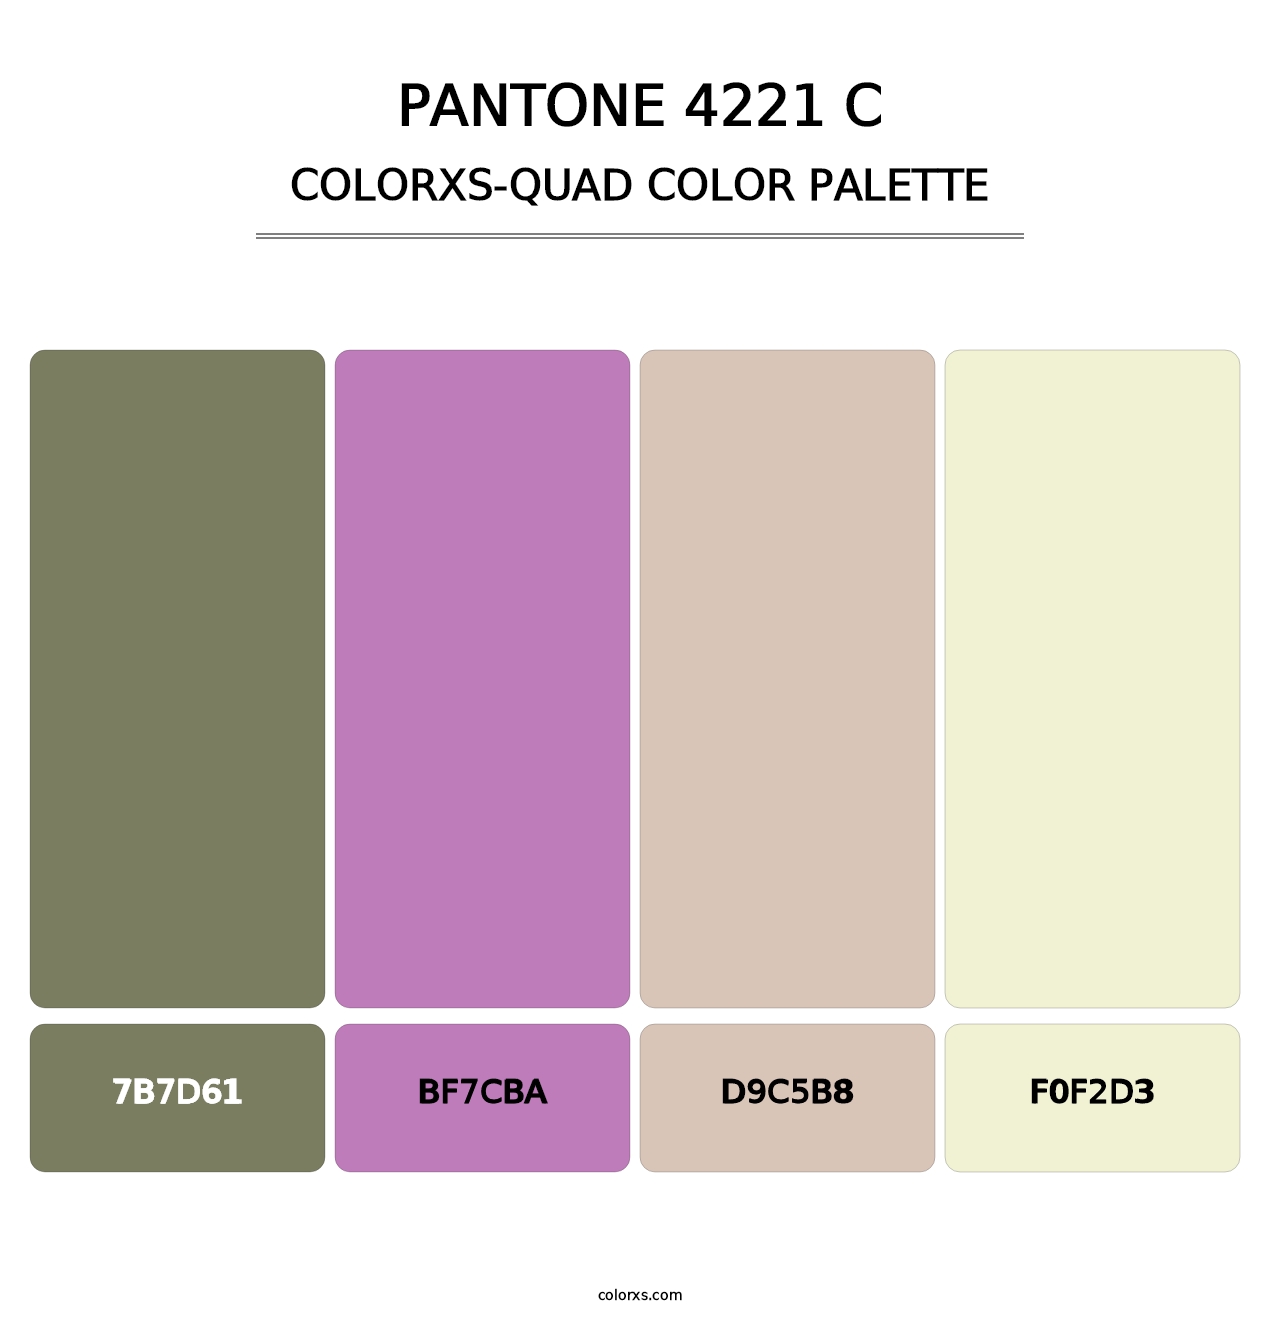 PANTONE 4221 C - Colorxs Quad Palette